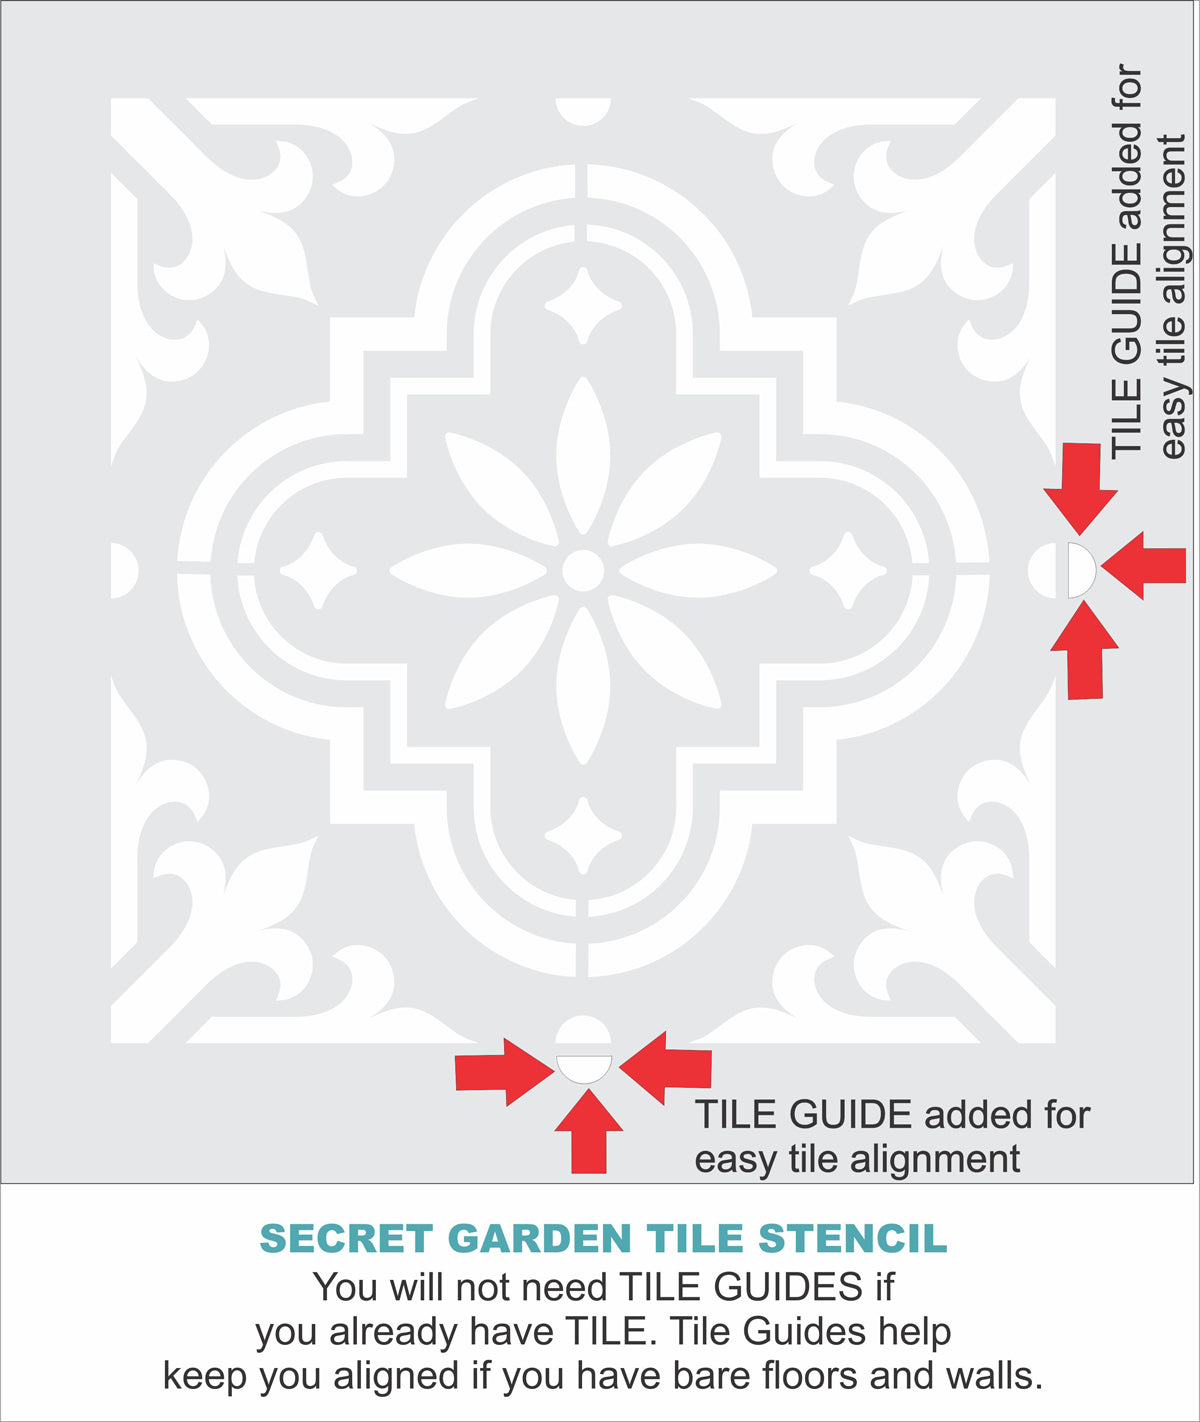 Secret Garden Tile Stencil - Superior Stencils